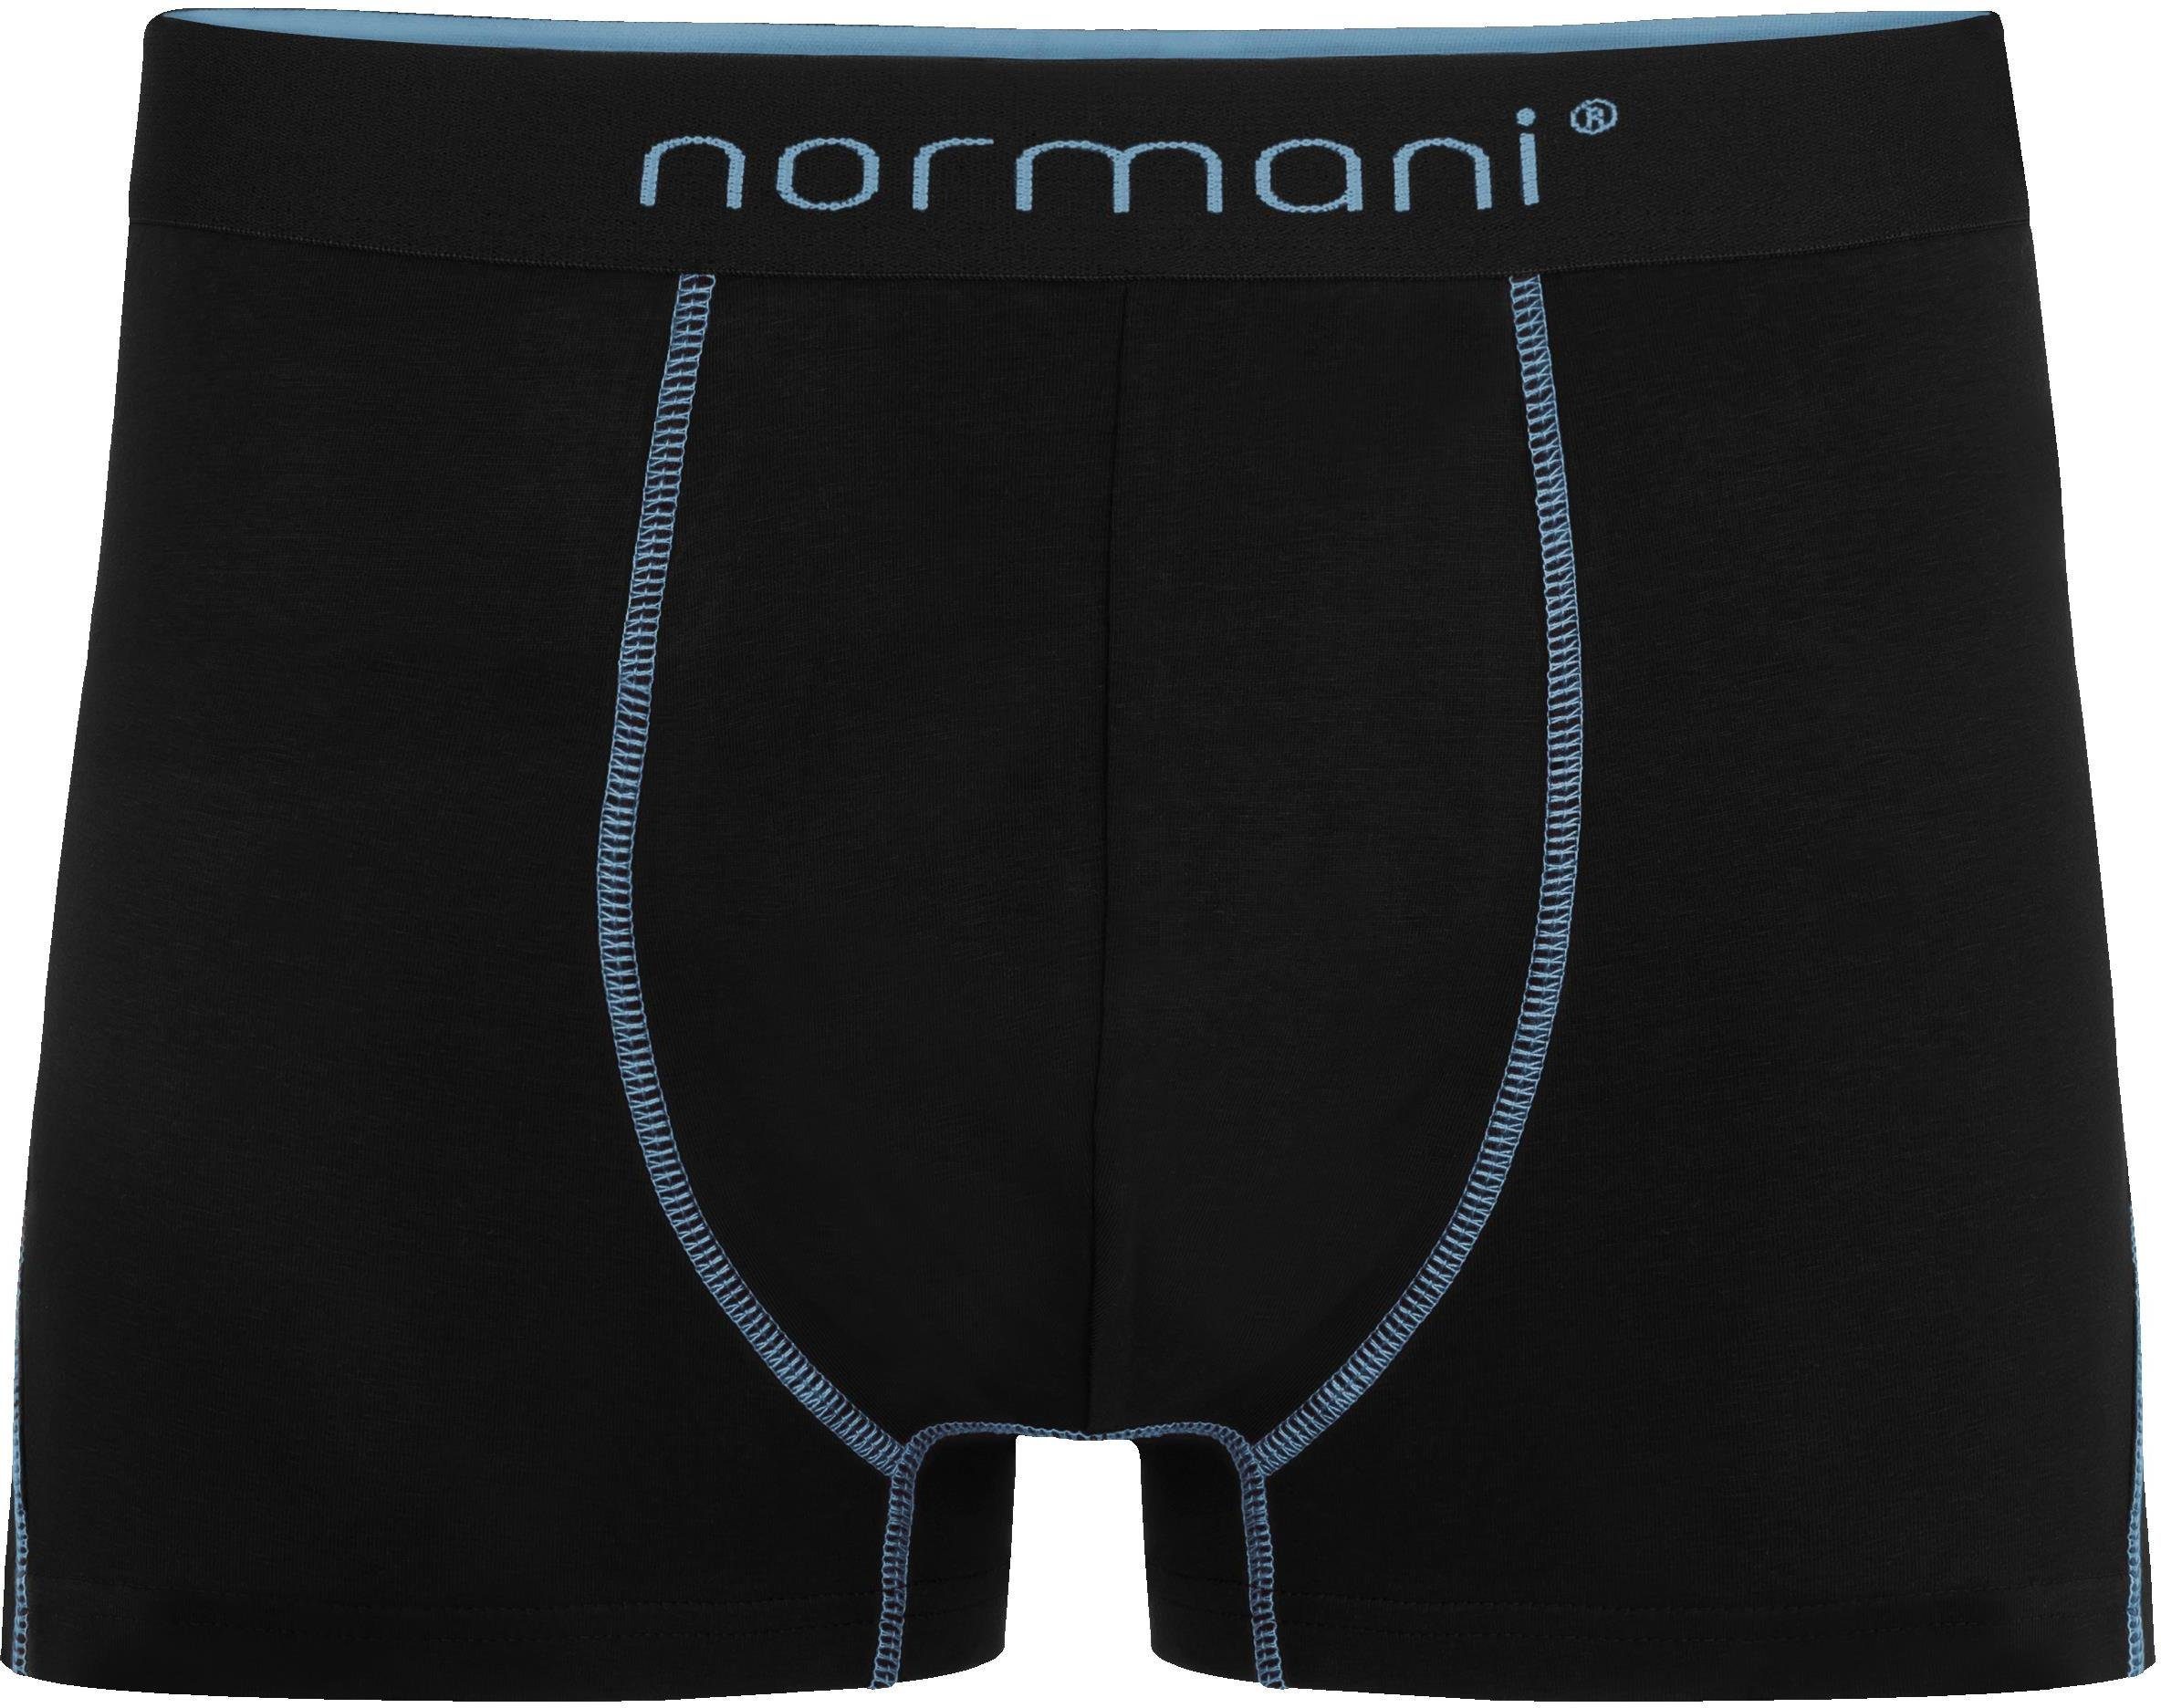 Baumwolle Herren Unterhose aus 6 Boxershorts Männer normani Baumwoll-Boxershorts Hellblau für atmungsaktiver